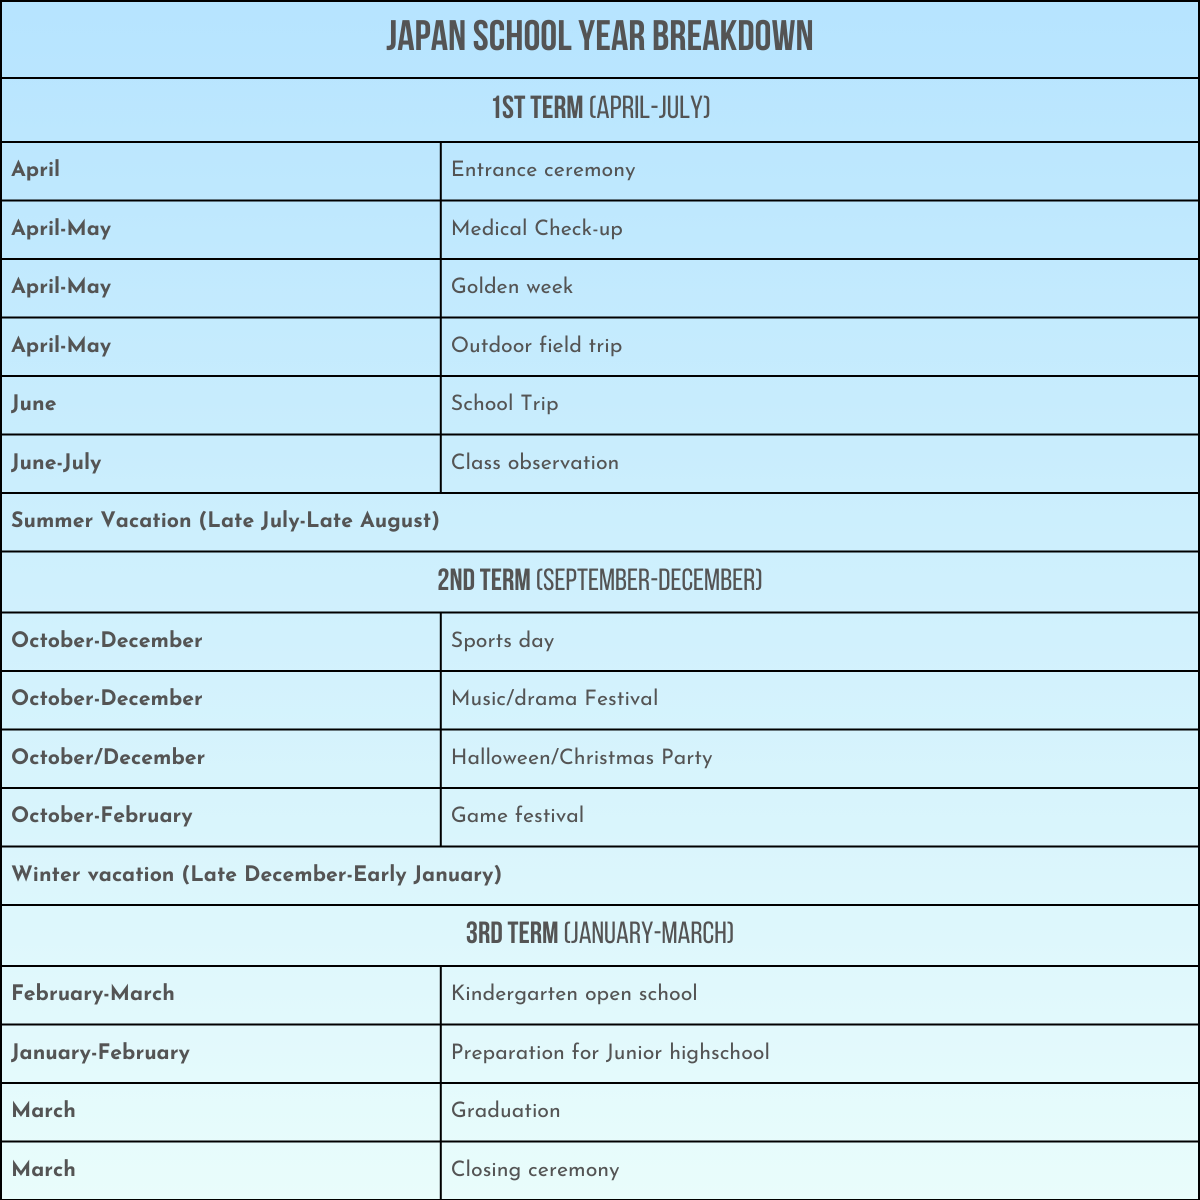 Japan School Year Breakdown